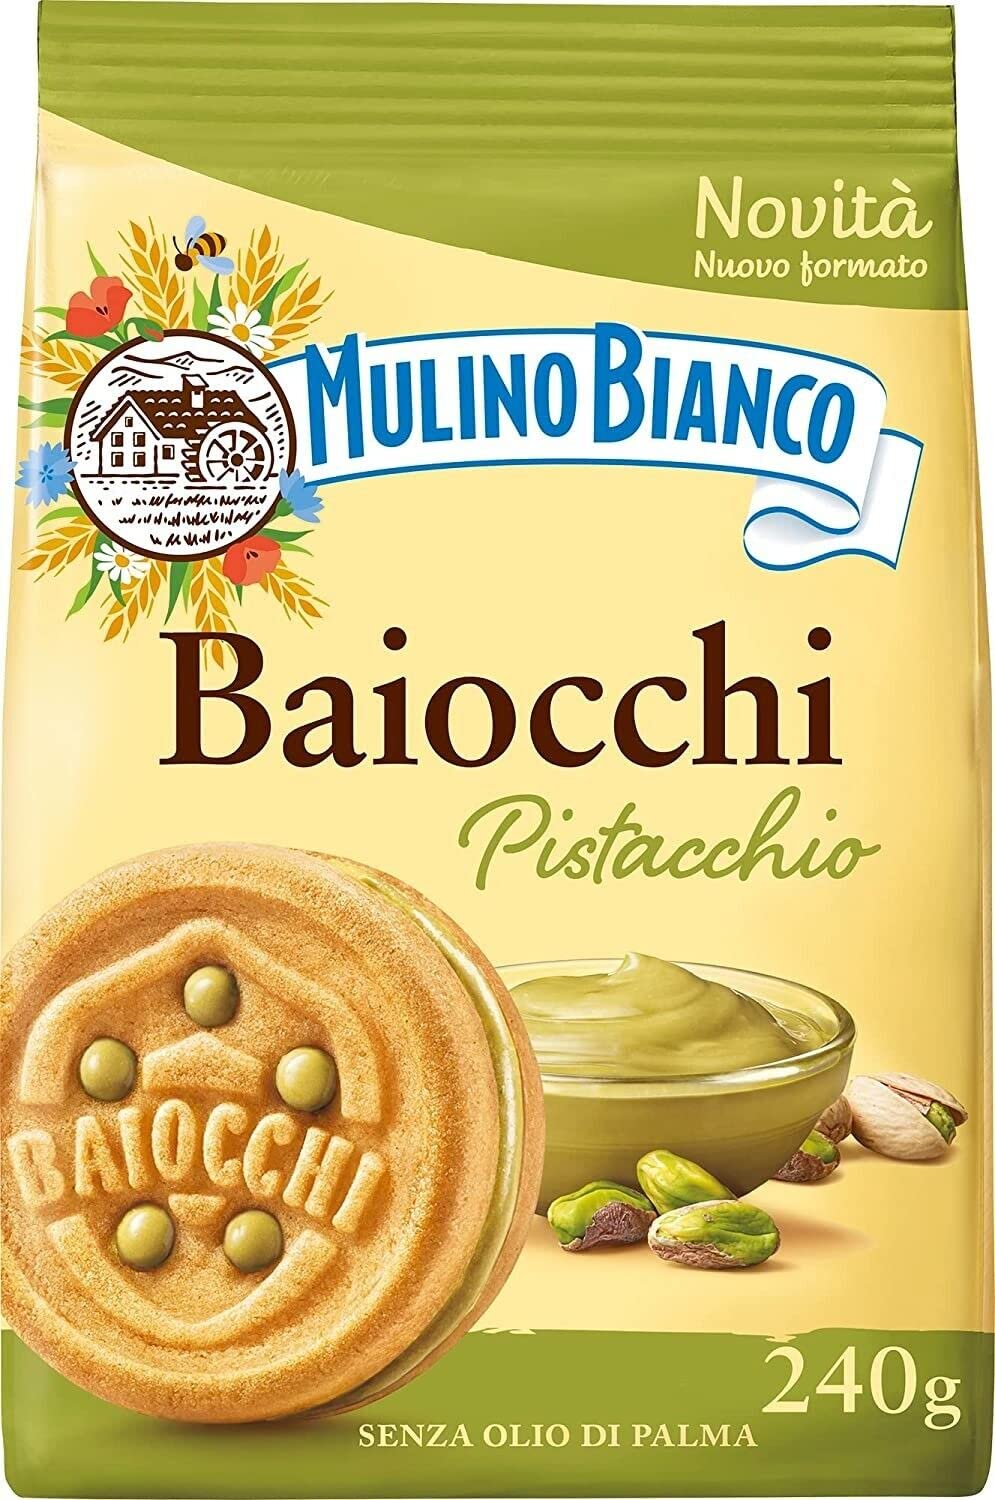 3x Mulino Bianco Baiocchi Pistacchio,Kekse mit Pistazien und Mürbeteig, ideal zum Frühstück oder Snack, ohne Palmöl 240g + Italian Gourmet Polpa di Pomodoro 400g Dose